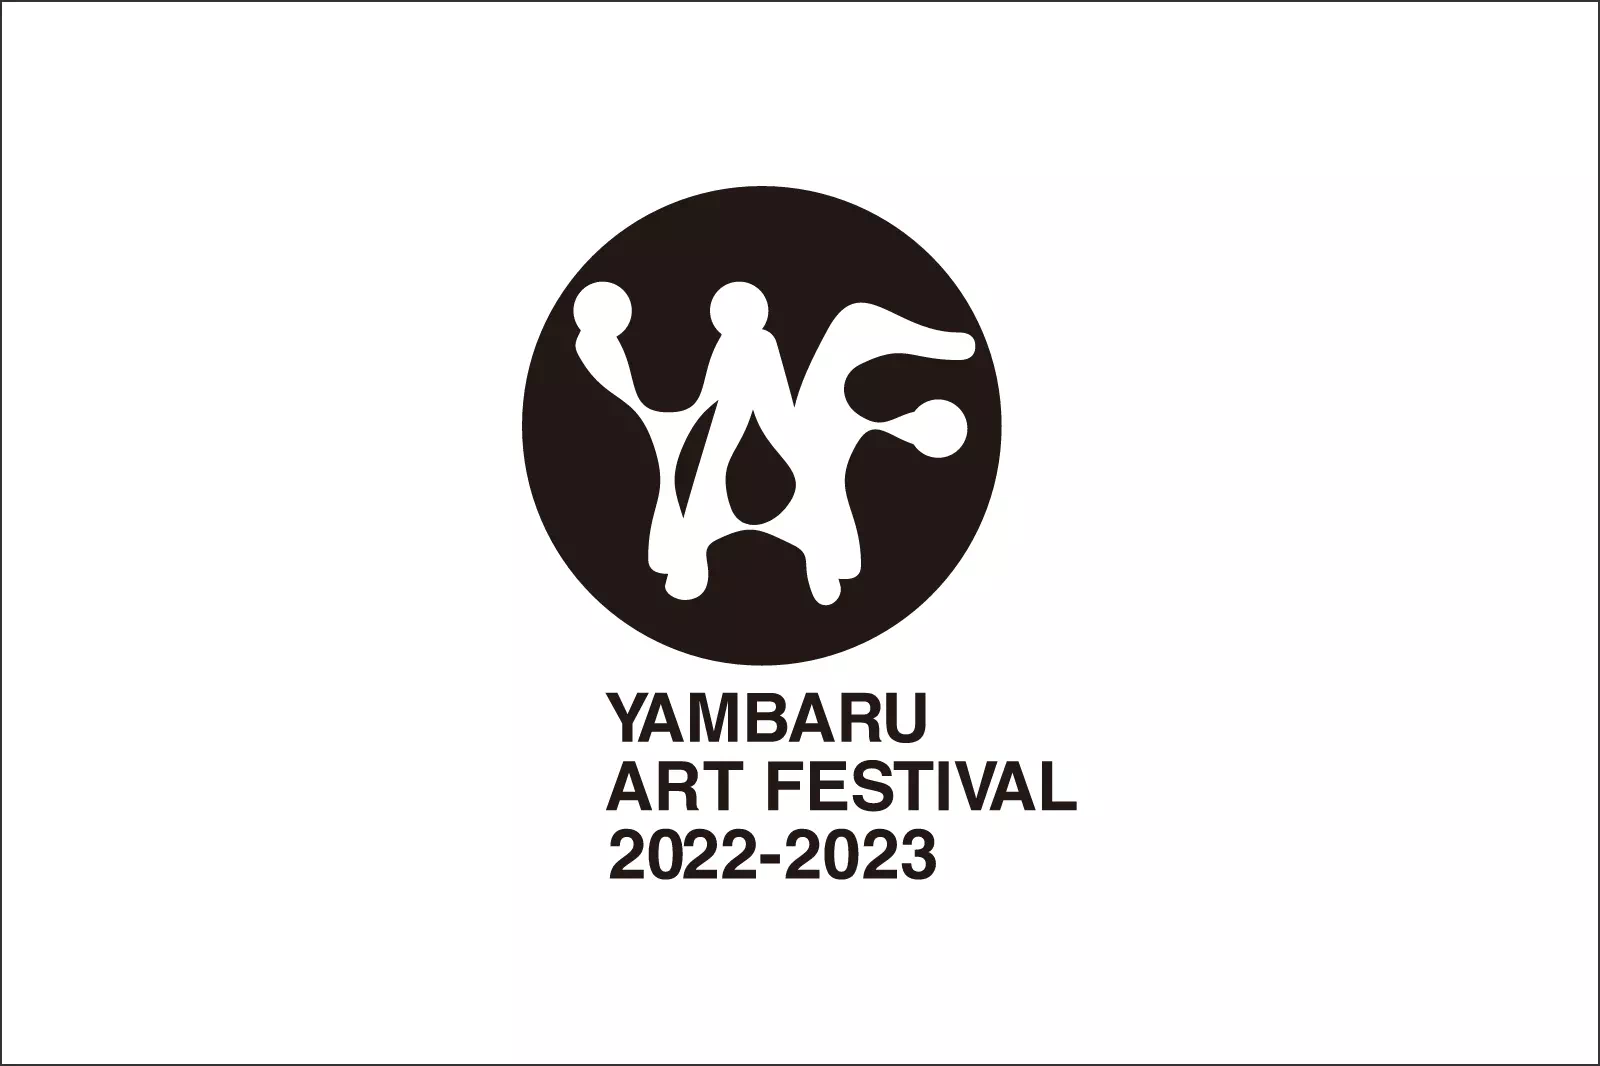 YAMBARU ART FESTIVAL 2022-2023